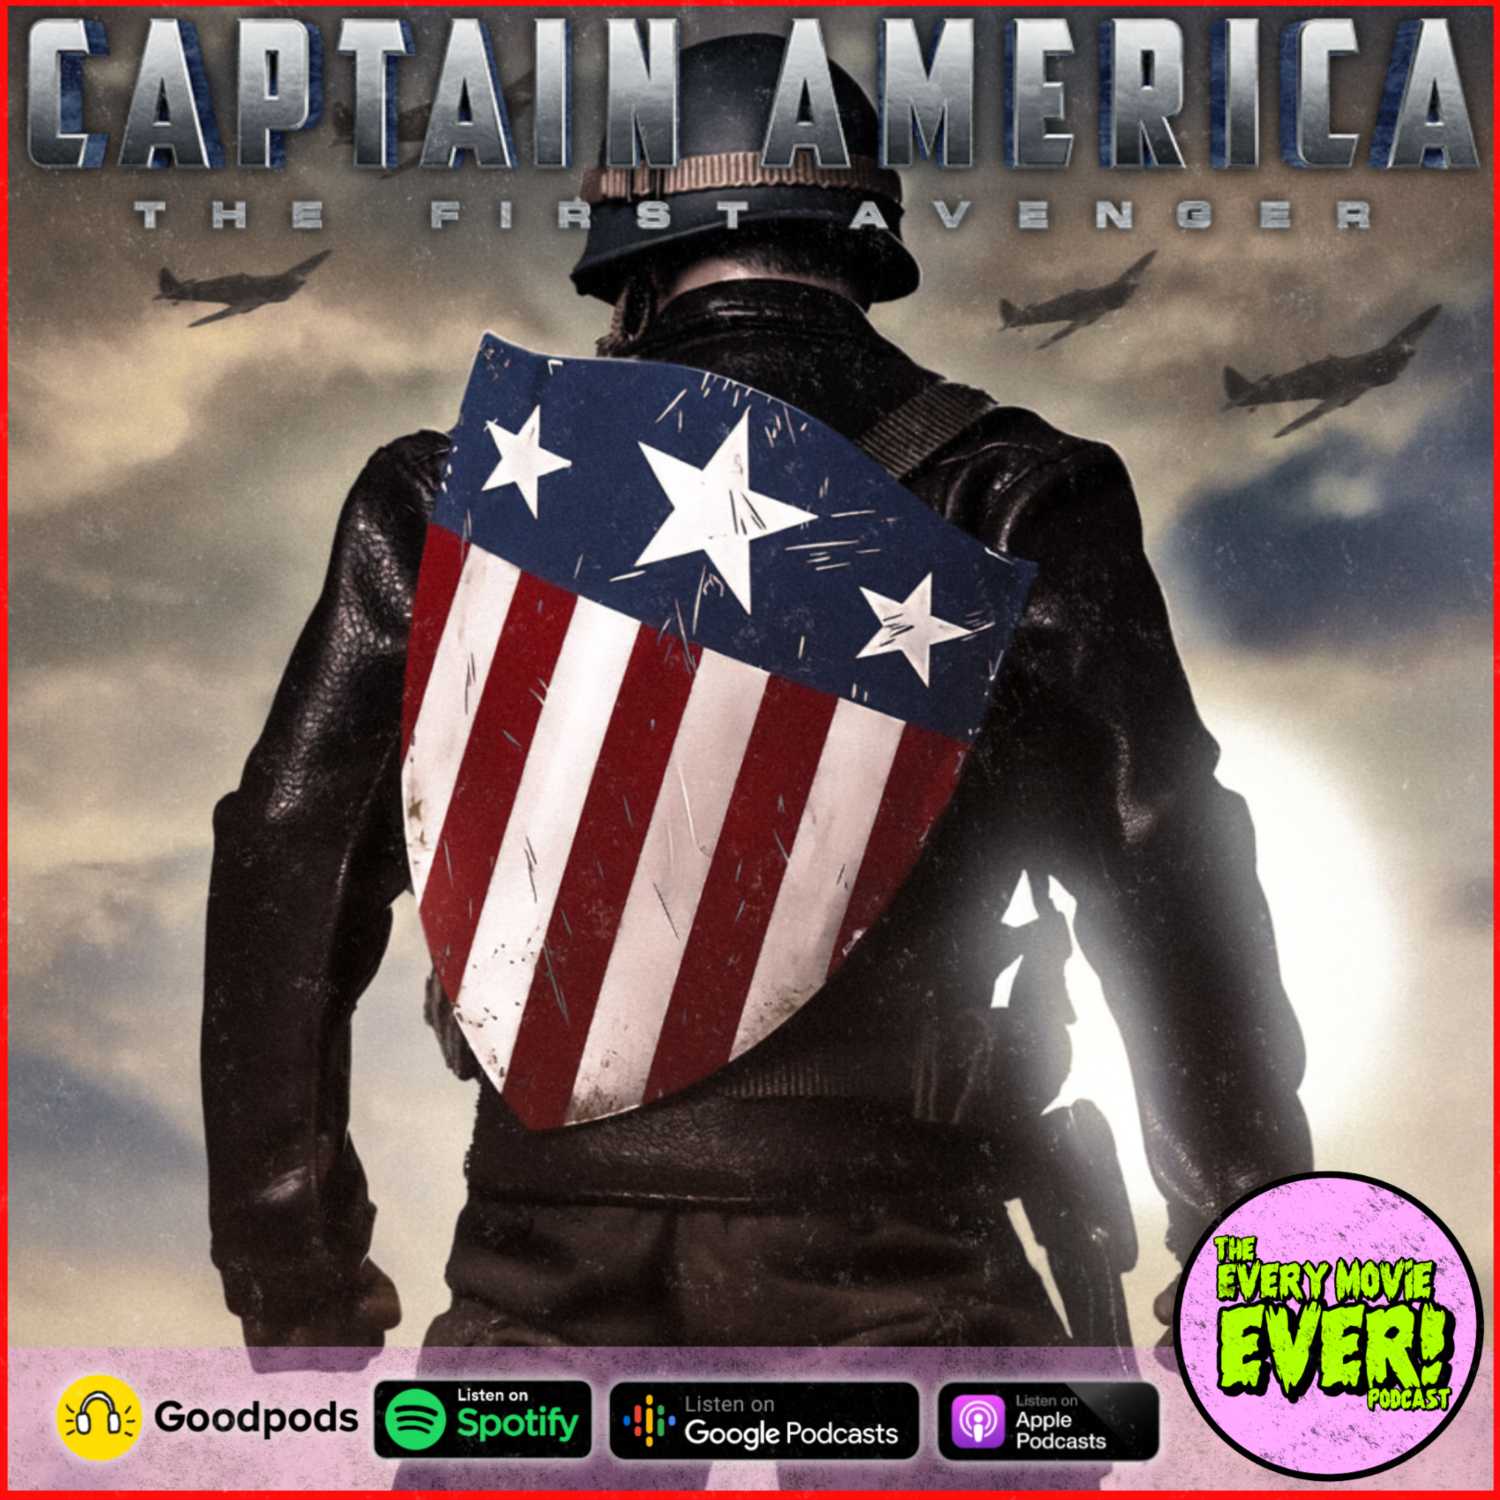 Captain America (2011): The Worst Avenger Or The Worthiest Heart In Marvel?